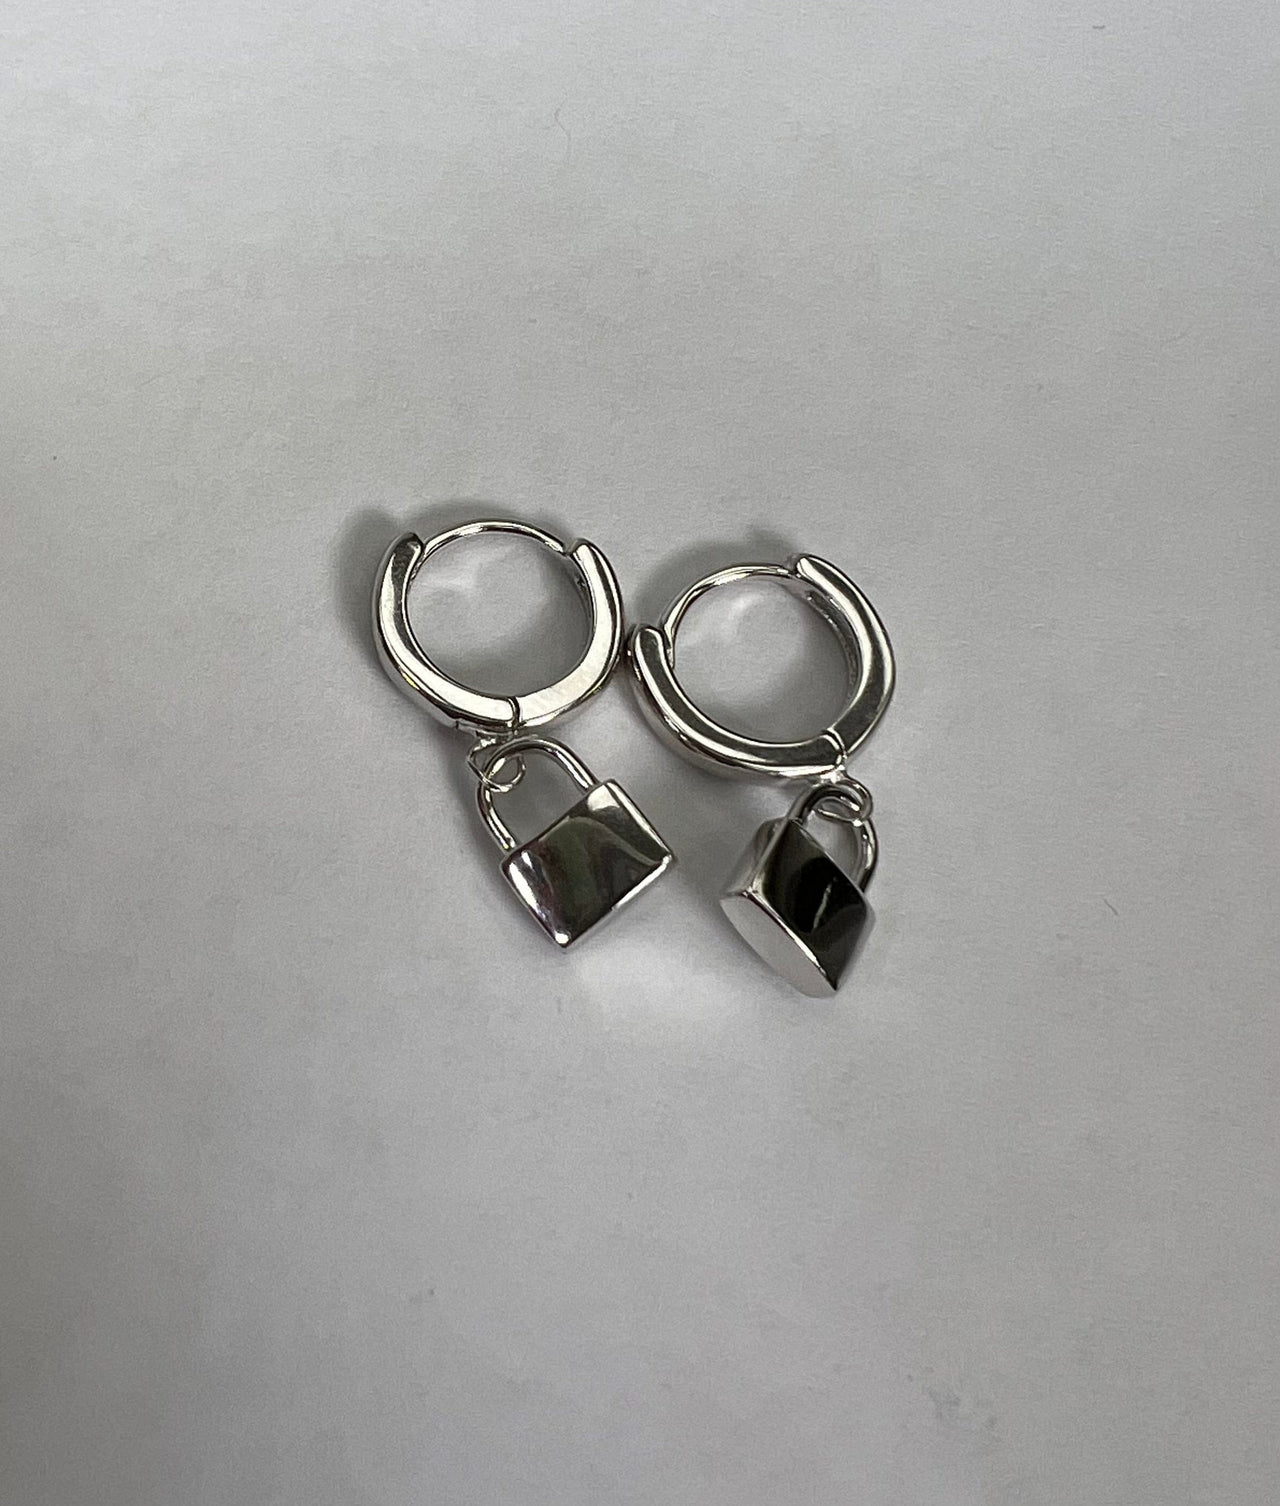 Denifery Gold Hoop Earring Lock Key Dangle Drop Boho Simple Earrings Set  Delicate Huggie Earrings Hypoallergenic Jewelry Set for Women and Girls  (Style 3) : Buy Online at Best Price in KSA -